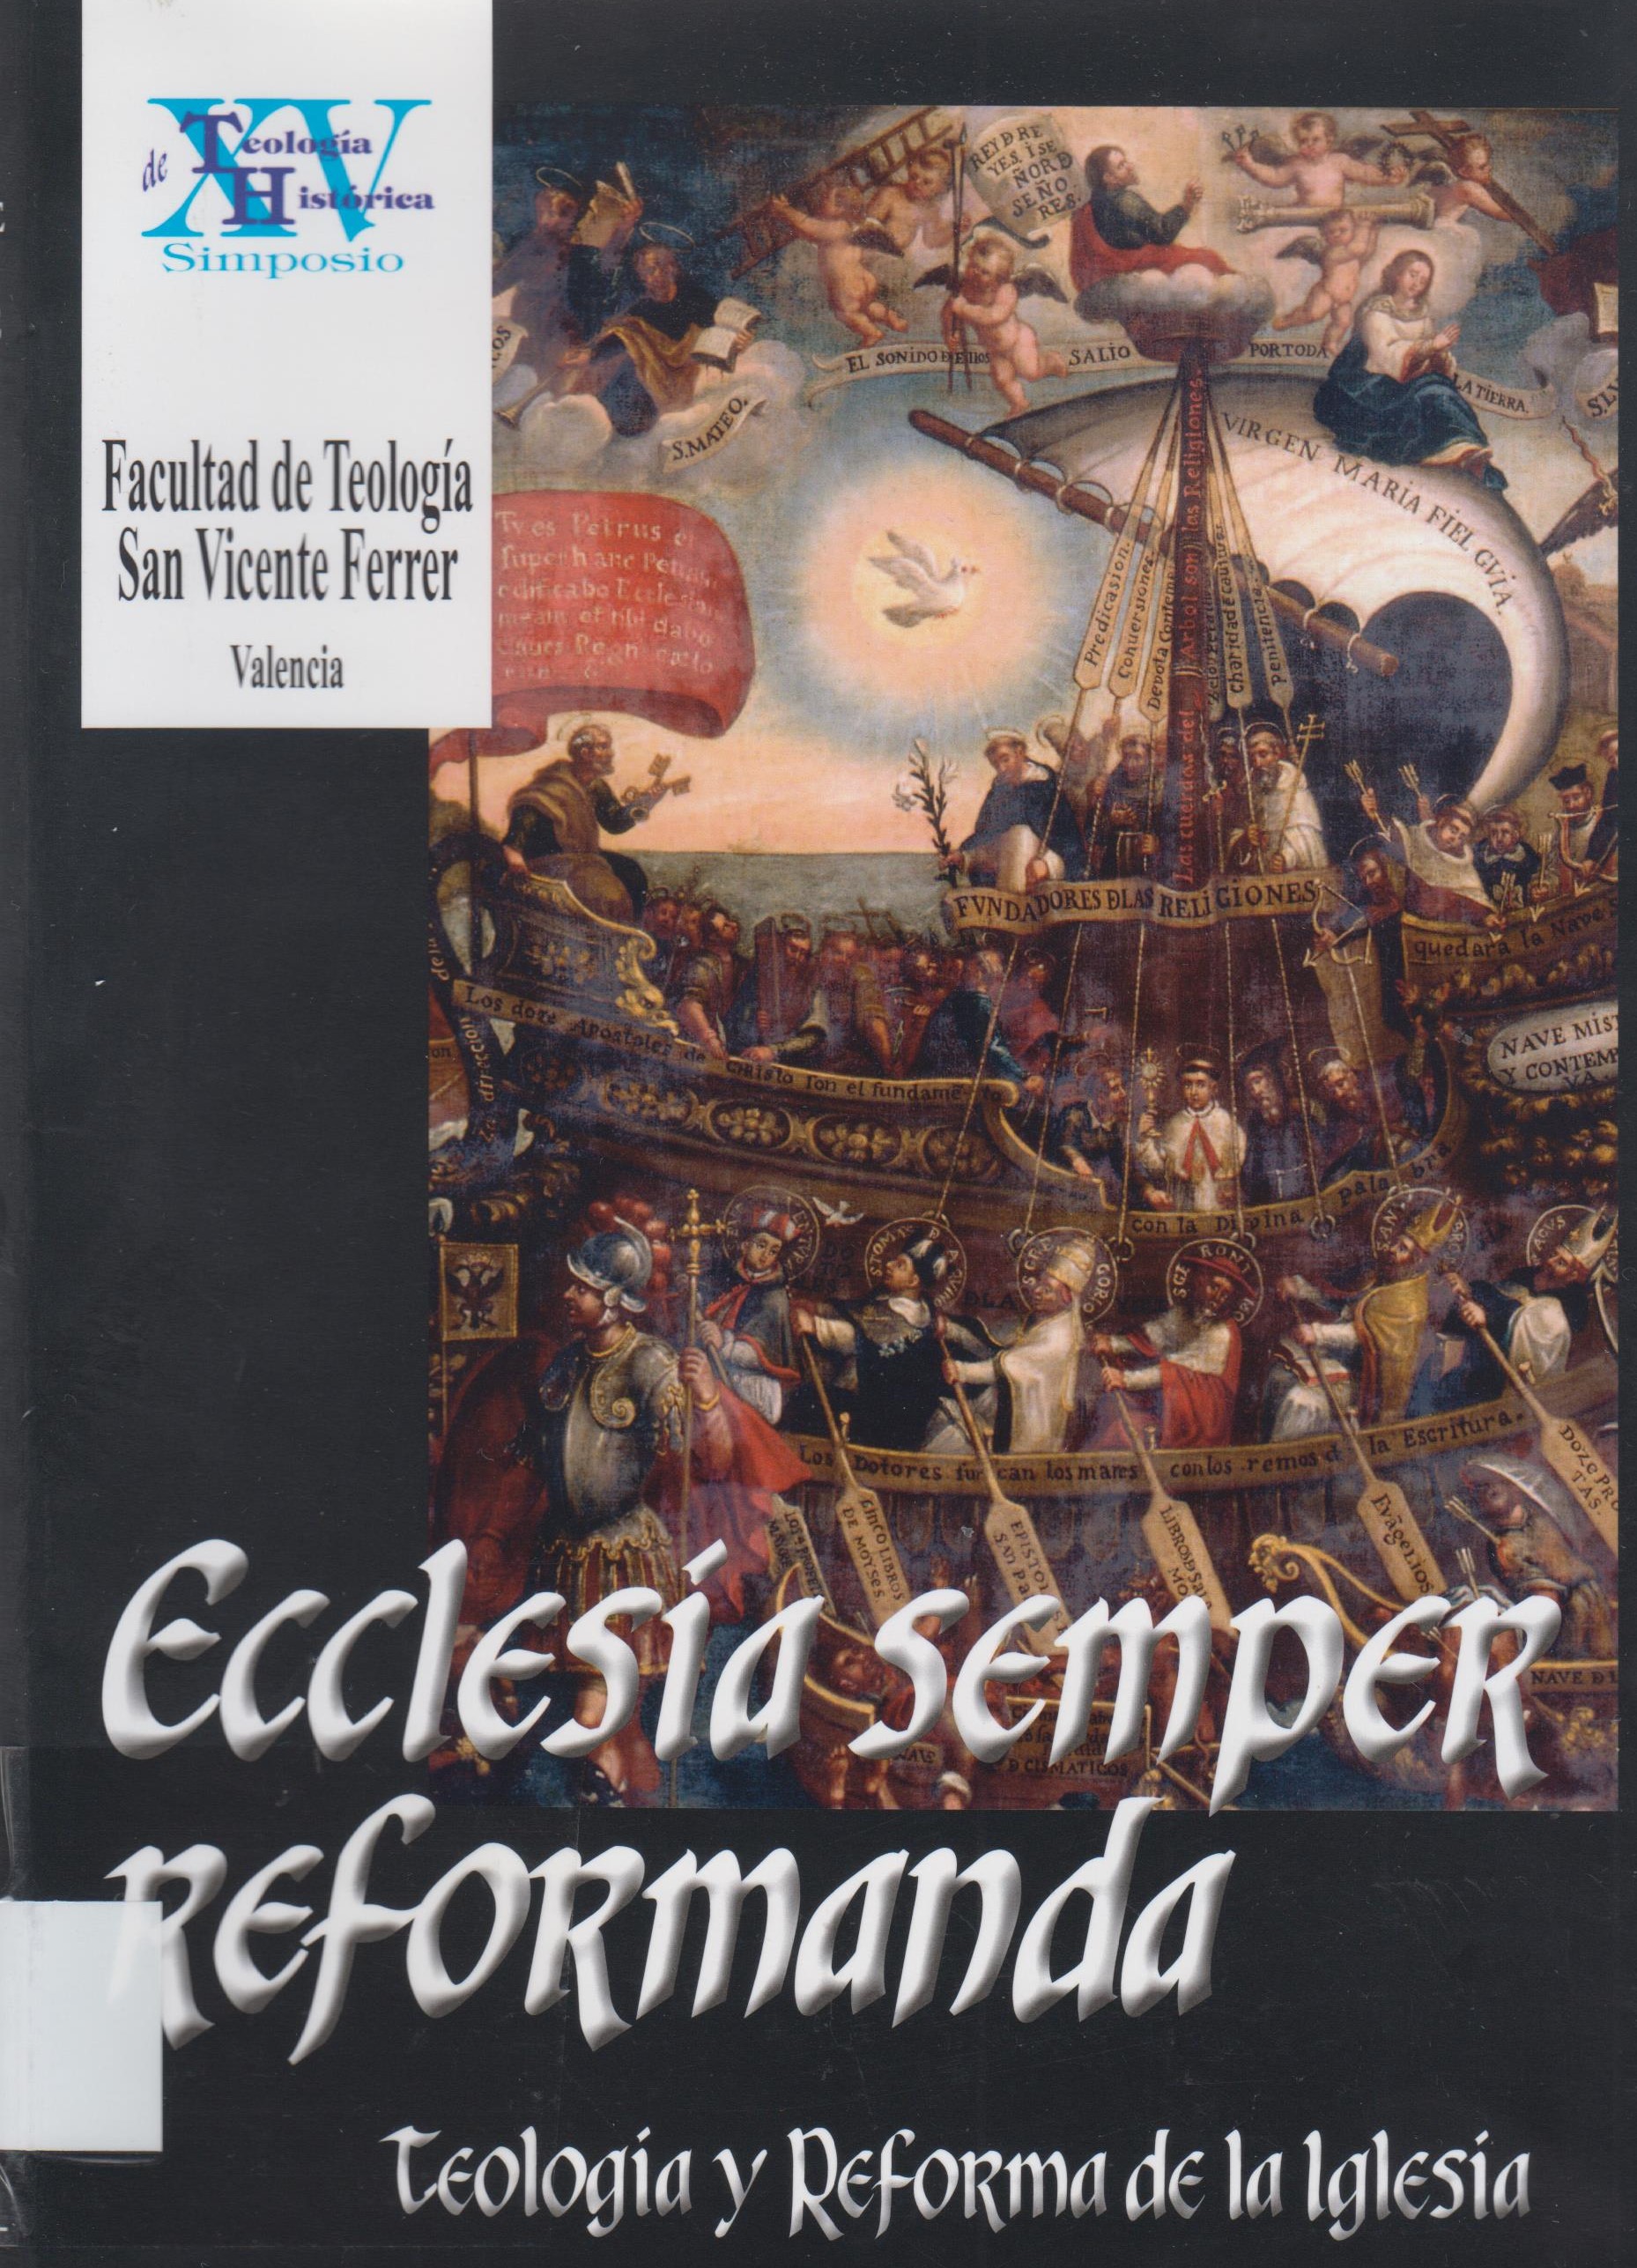 Imagen de portada del libro Ecclesia semper reformanda